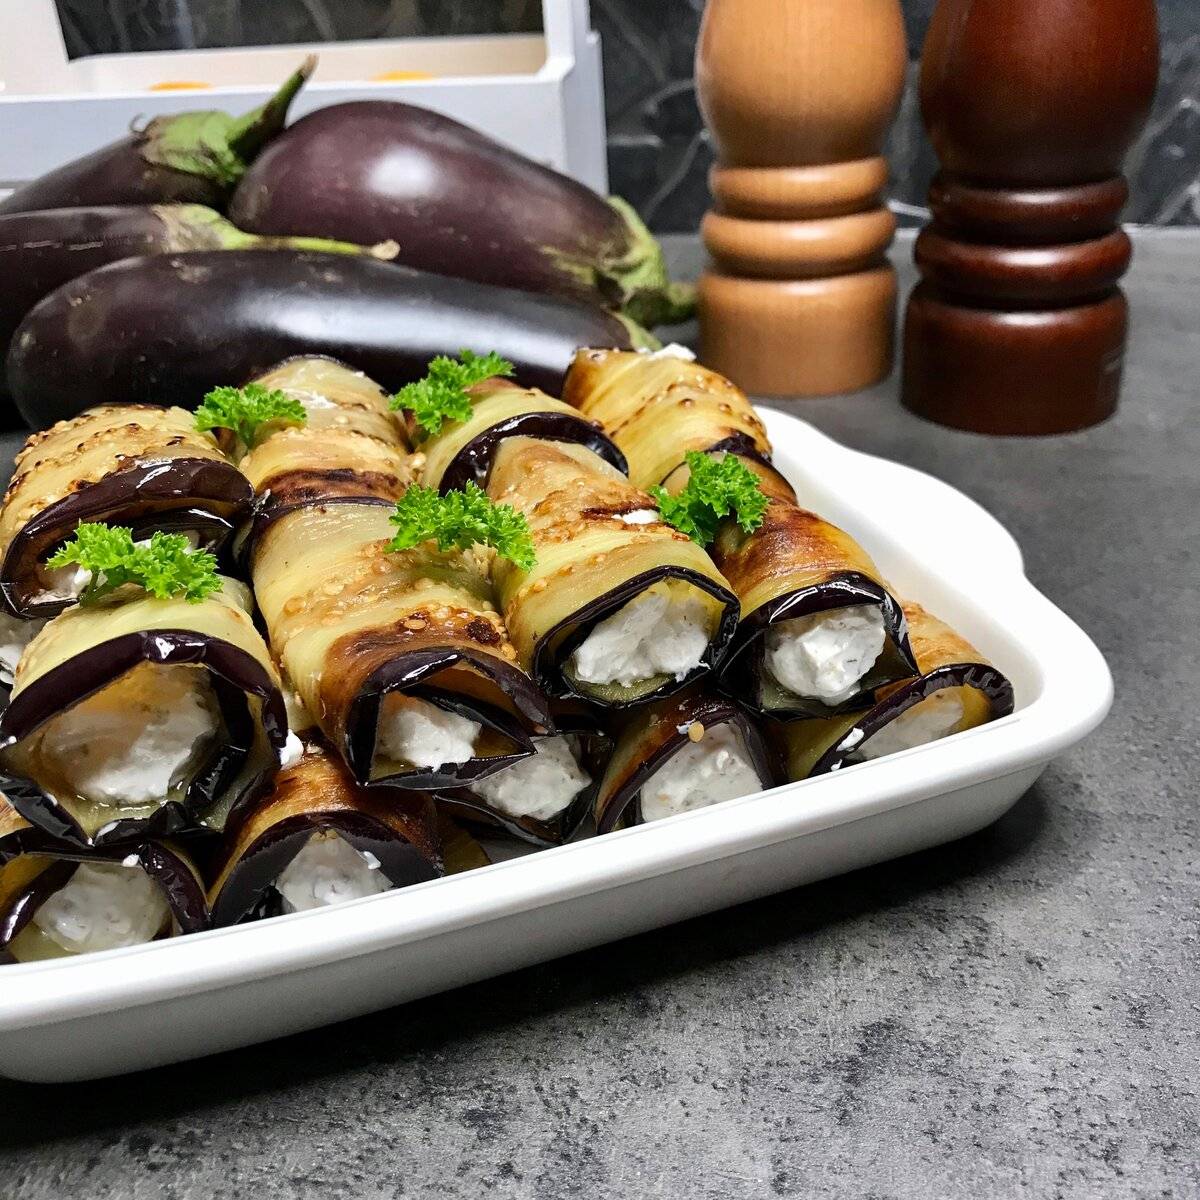 Блюда из баклажанов - как приготовить быстро и вкусно по рецептам с фото в духовке, сковороде и мультиварке